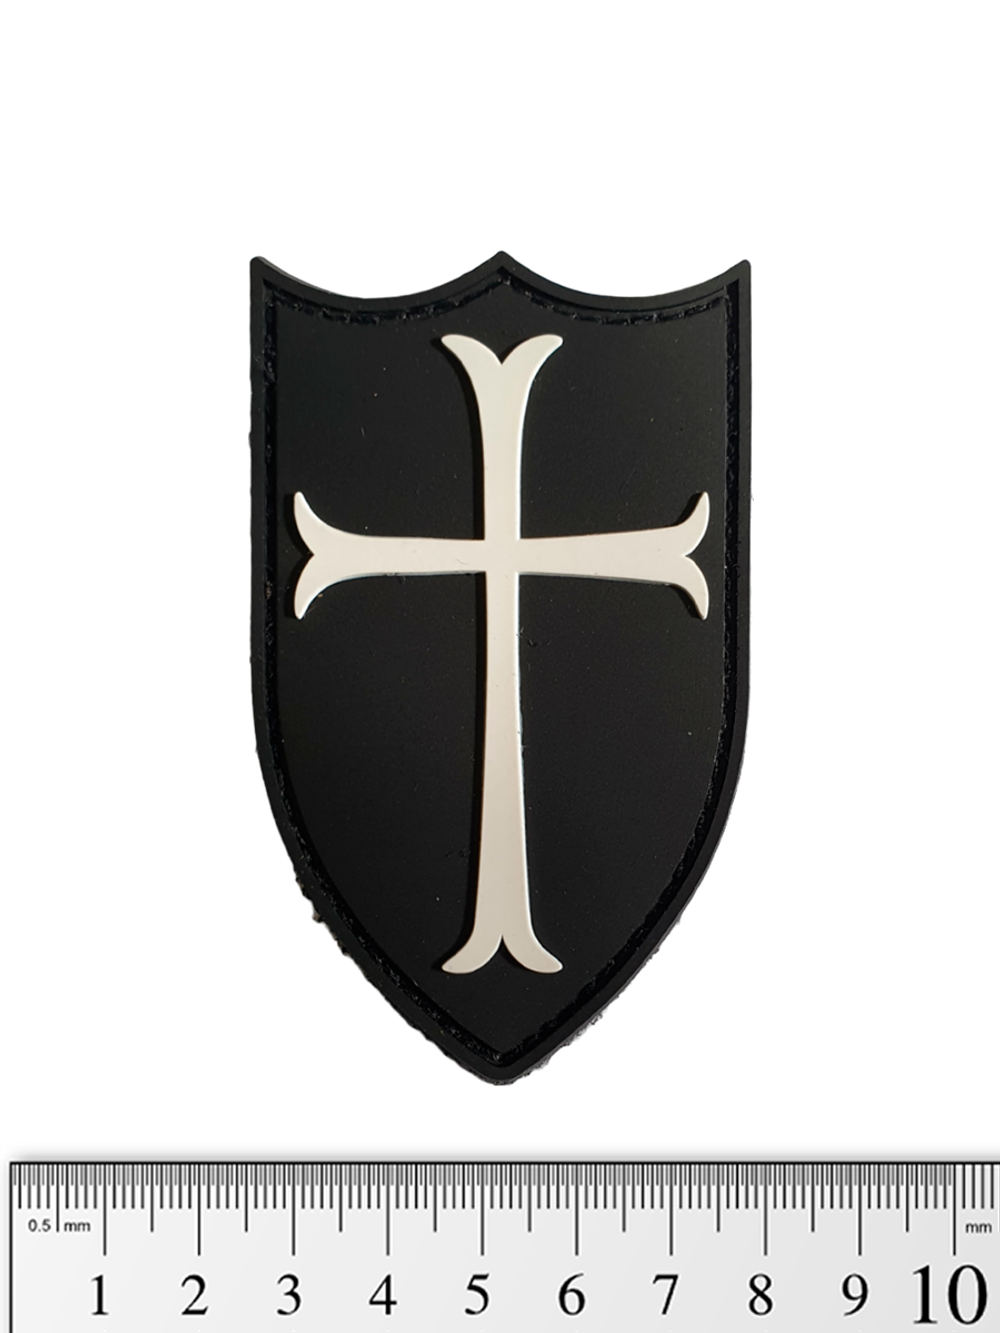 Шеврон Crusader (Крестоносец) PVC. Чёрный с белым крестом